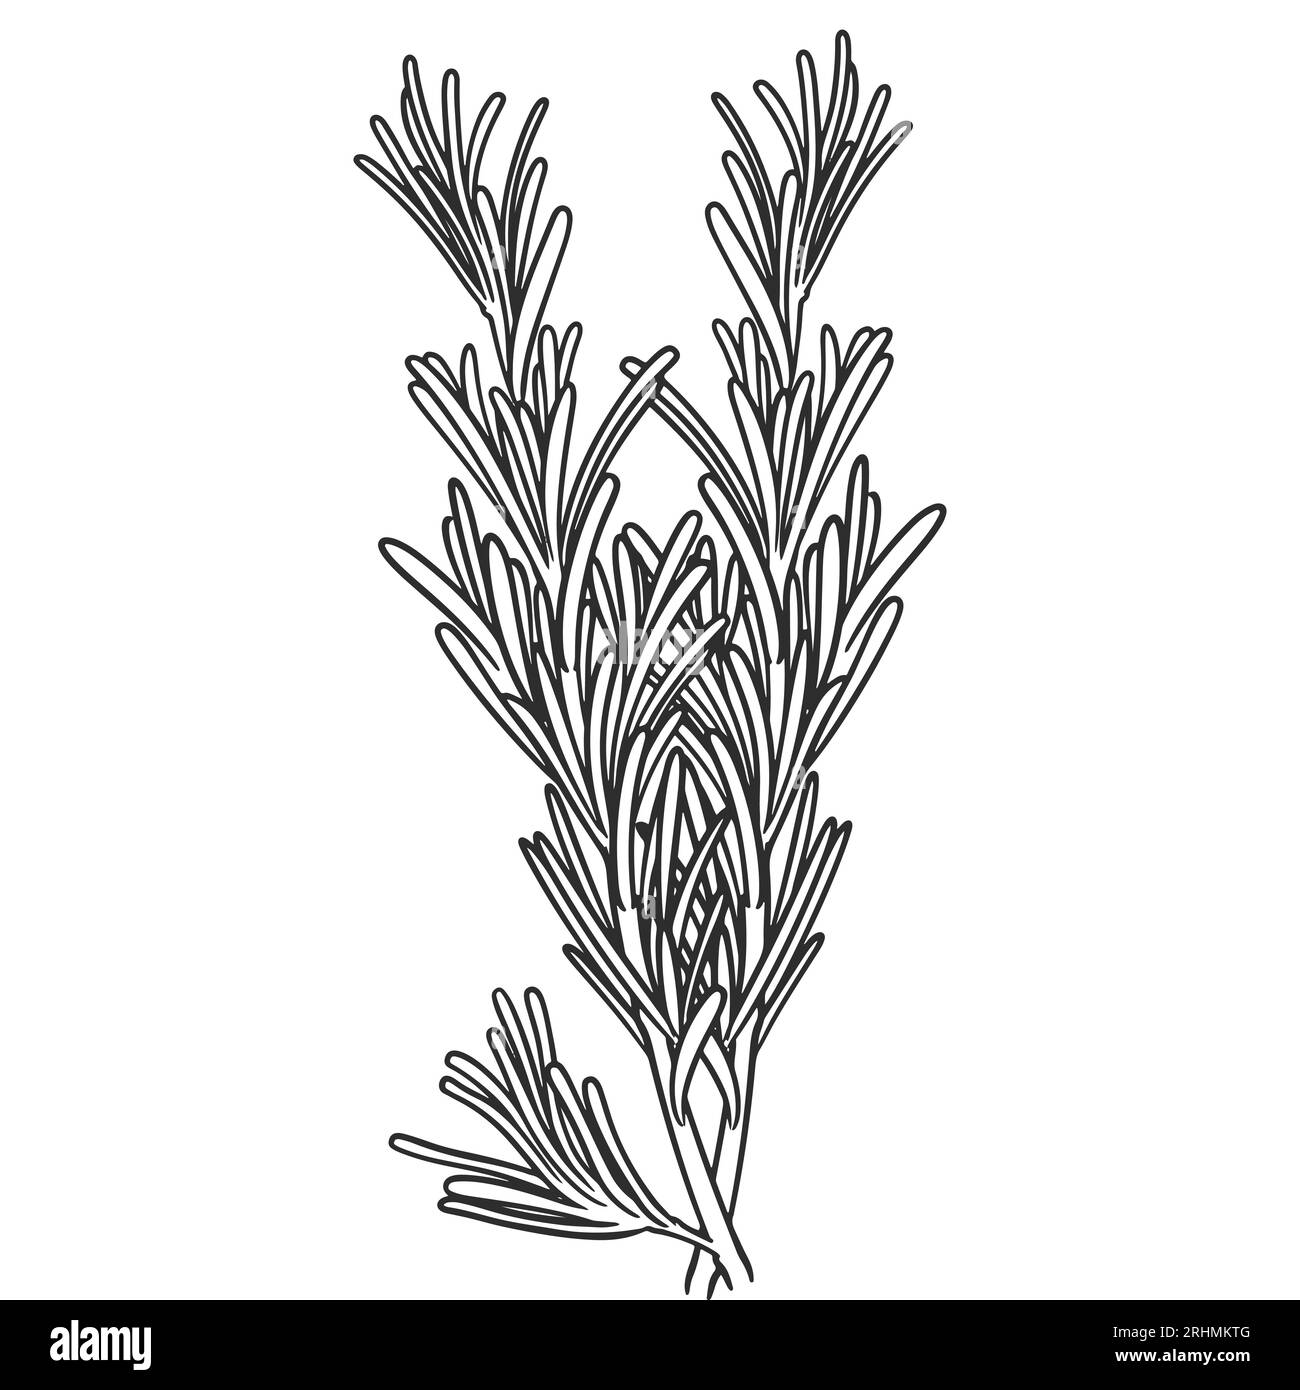 Piante di olio essenziale disegnate a mano che disegnano rosmarino o rosmarinus officinalis isolate su fondo bianco. Illustrazione Vettoriale